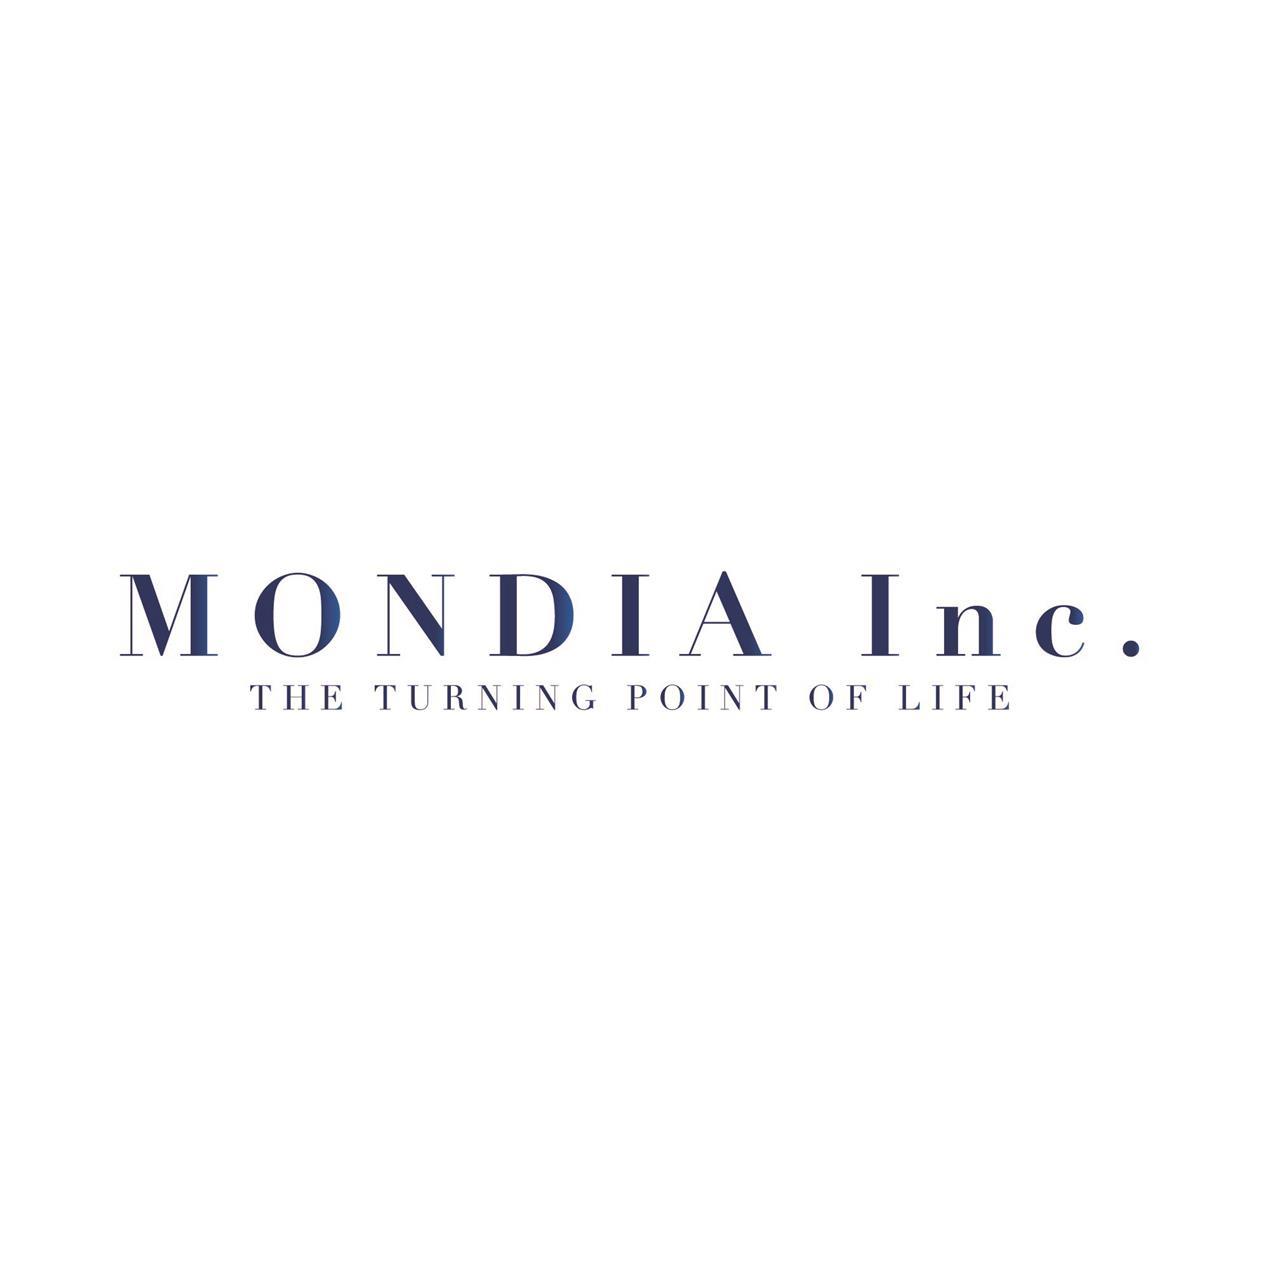 株式会社MONDIAについて